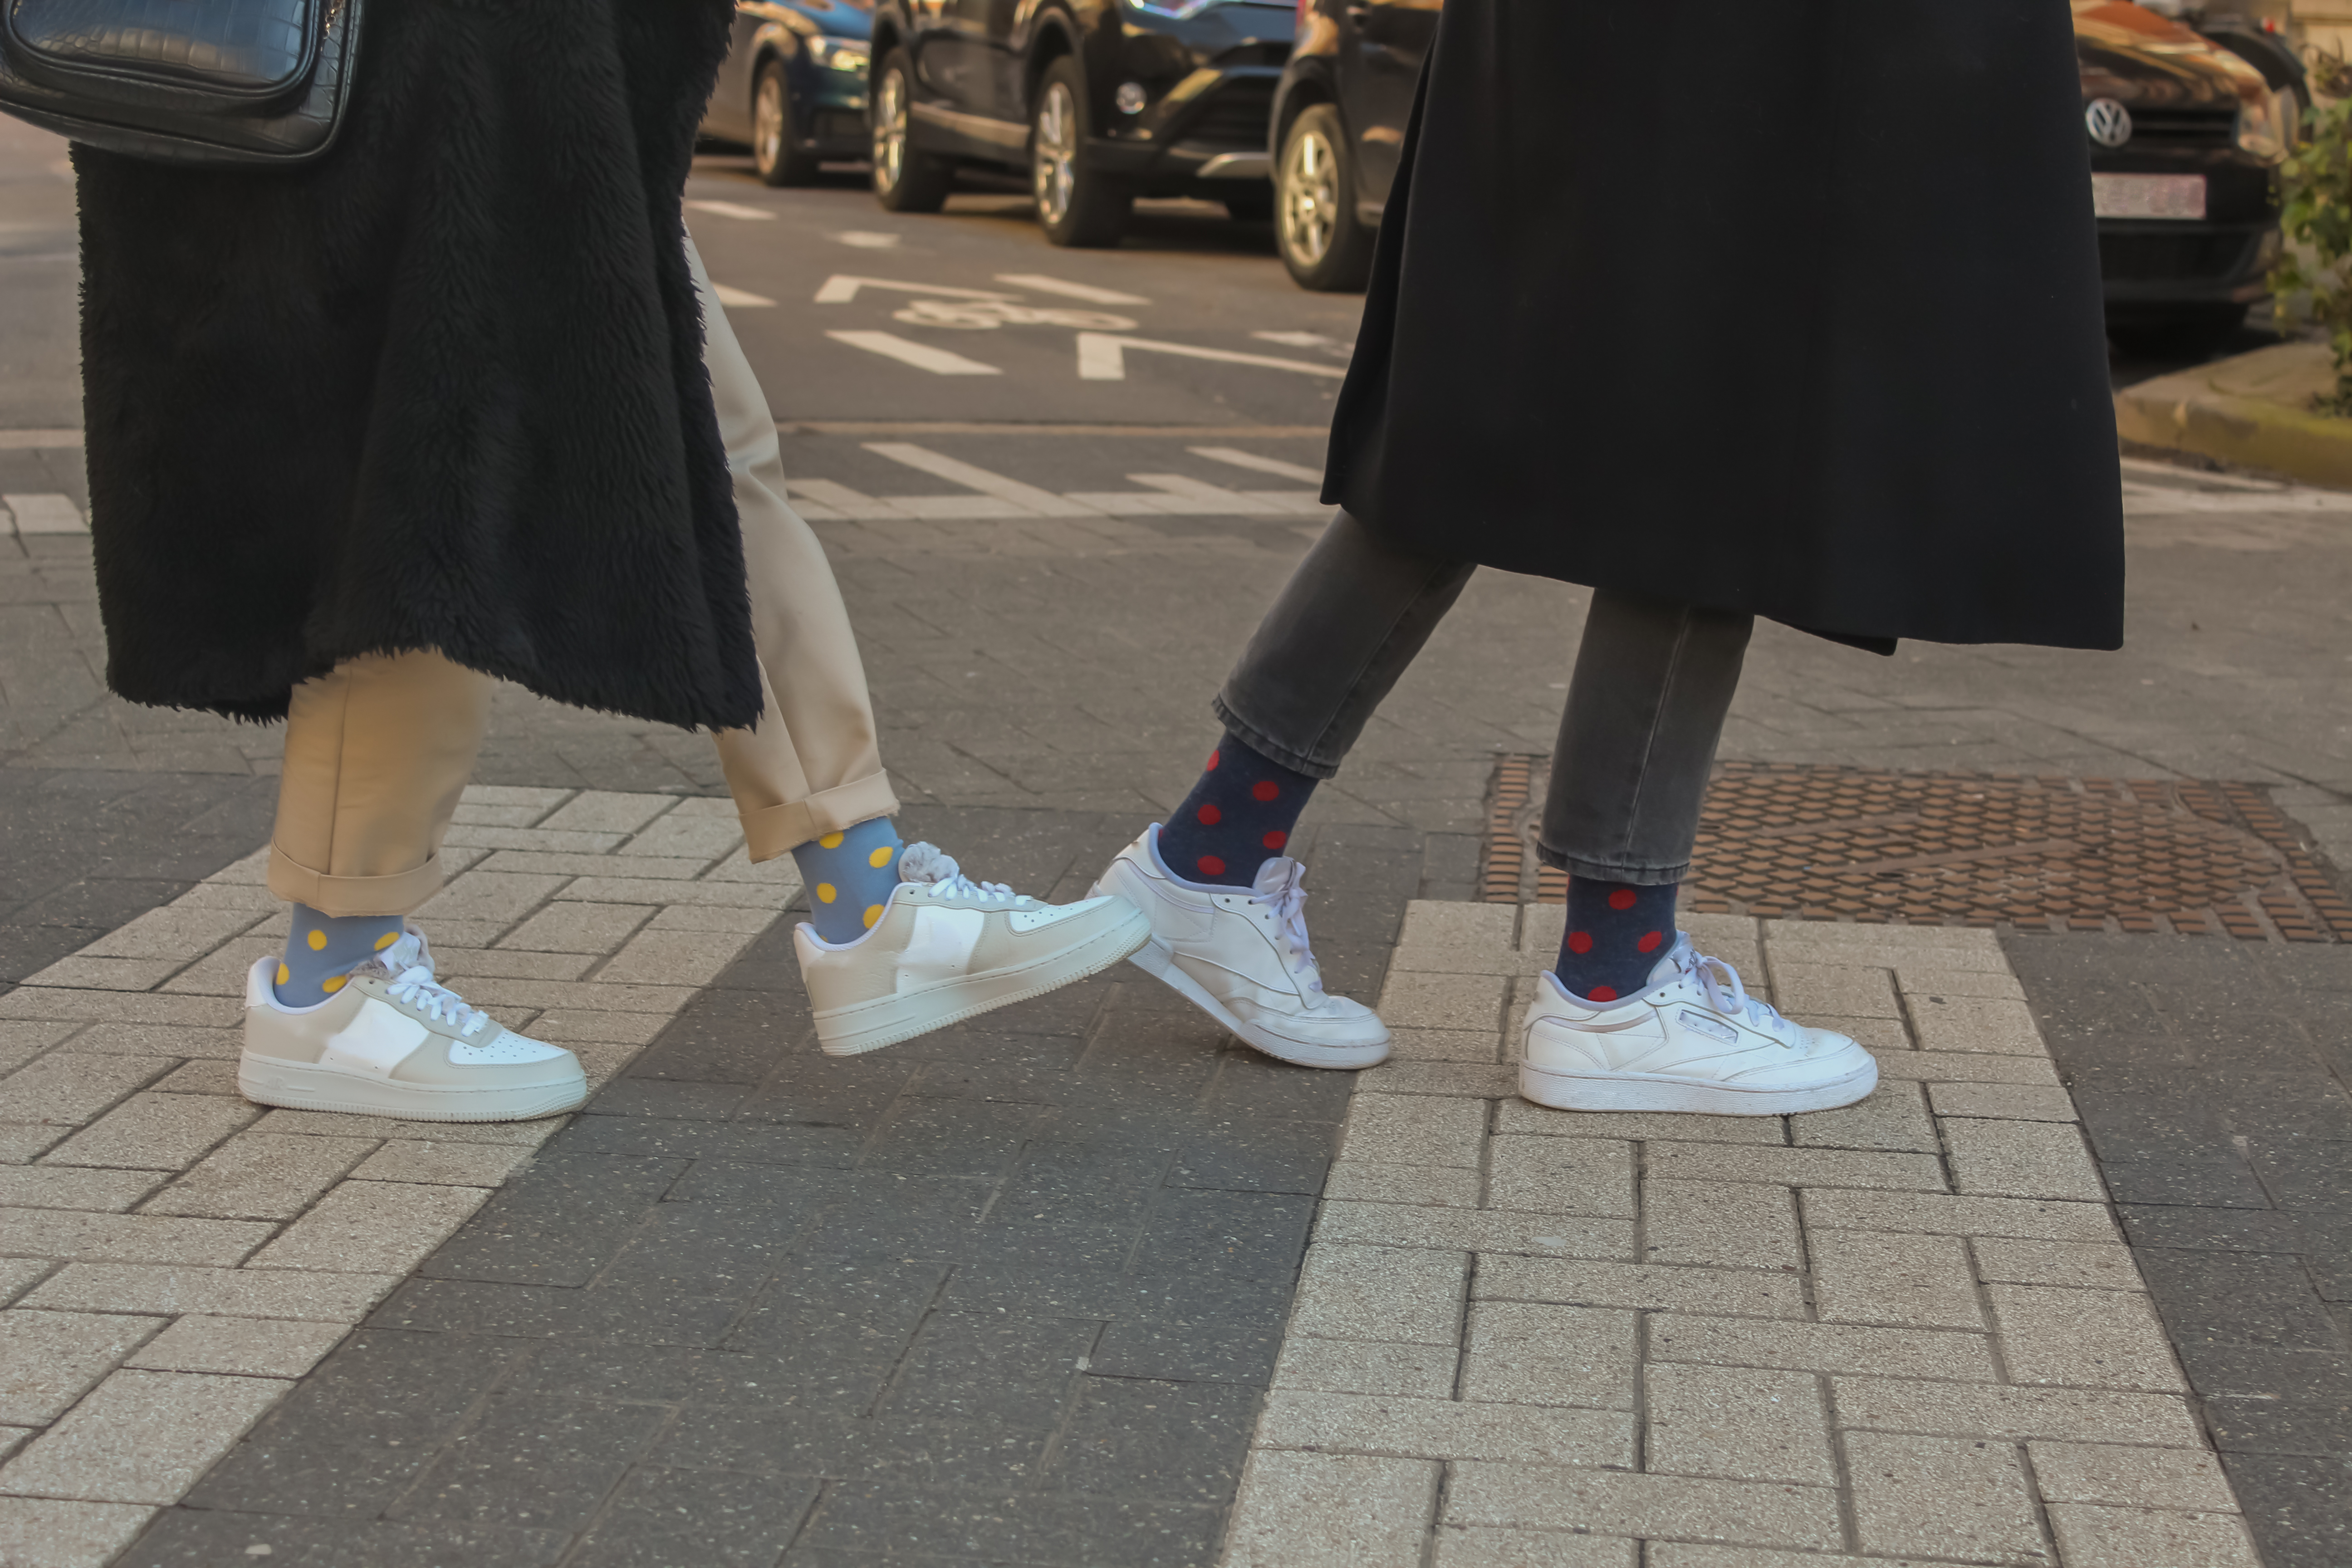 Socks in the streets